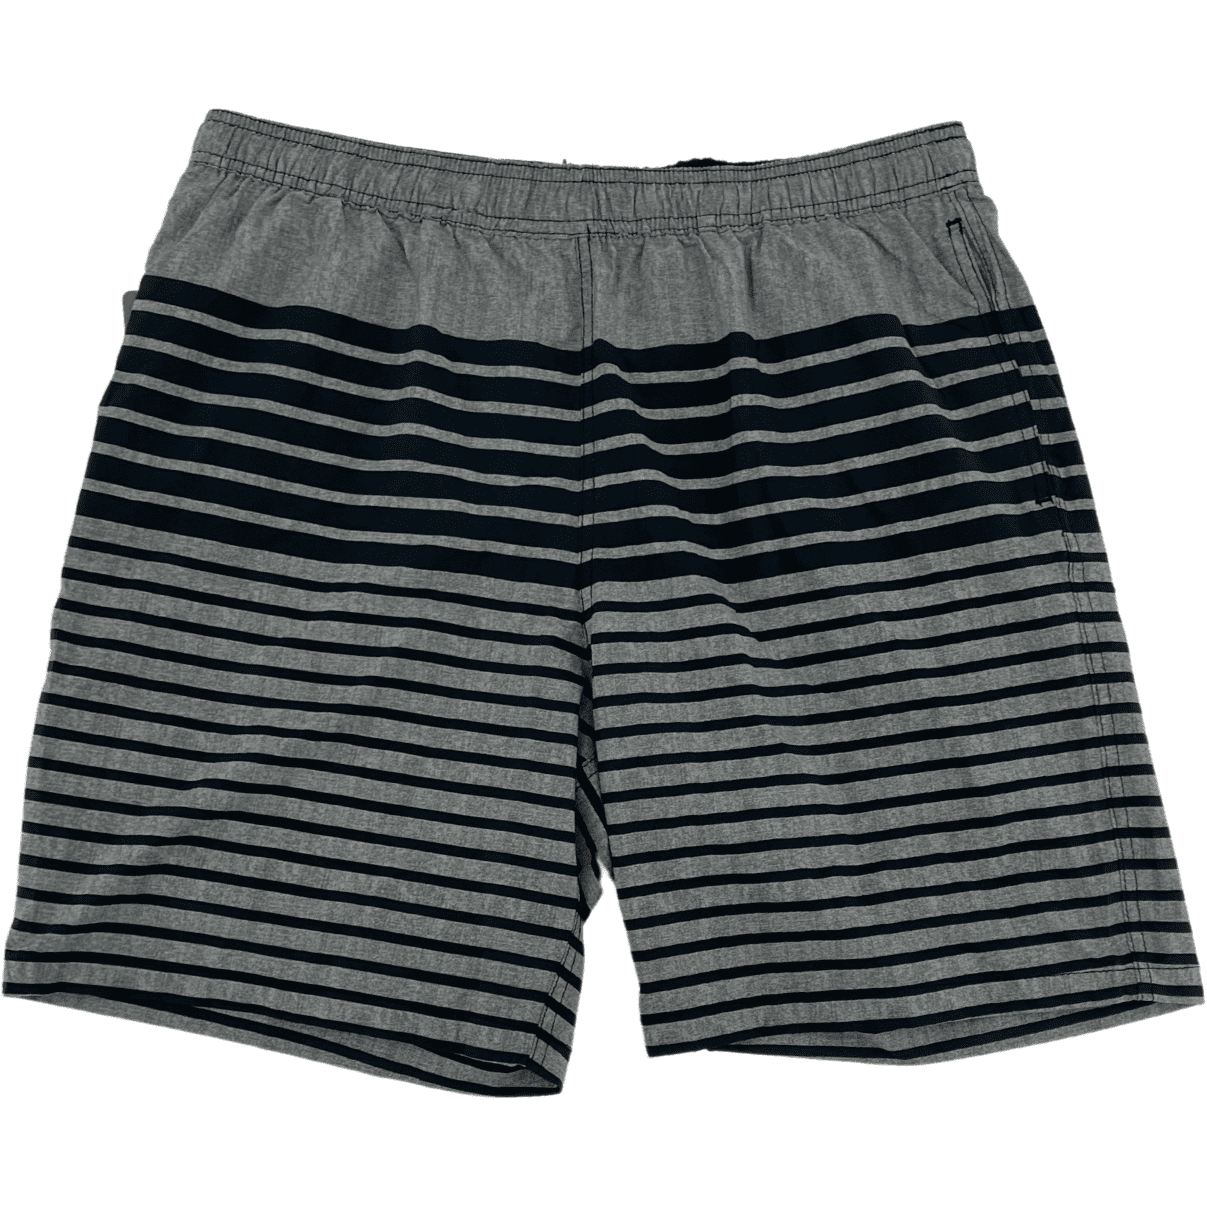 Kirkland Men's Swim Trunks / Men's Swim Shorts / Grey & Black / Various Sizes